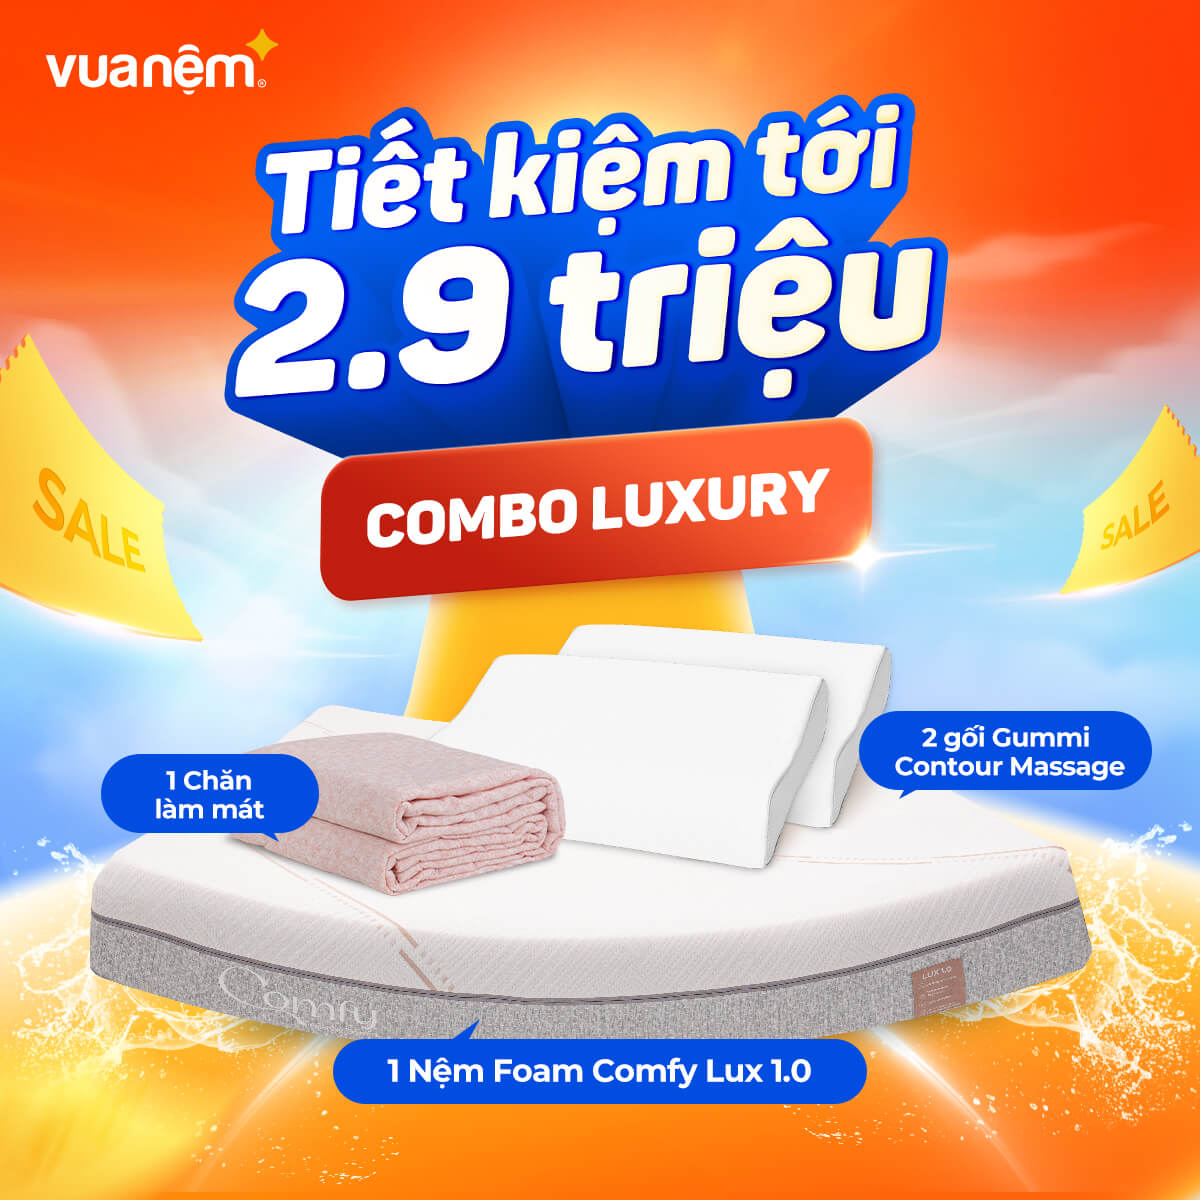 Combo Luxury: 1 nệm foam Lux 1.0, 2 gối Gummi Contour Massage, 1 Chăn làm mát